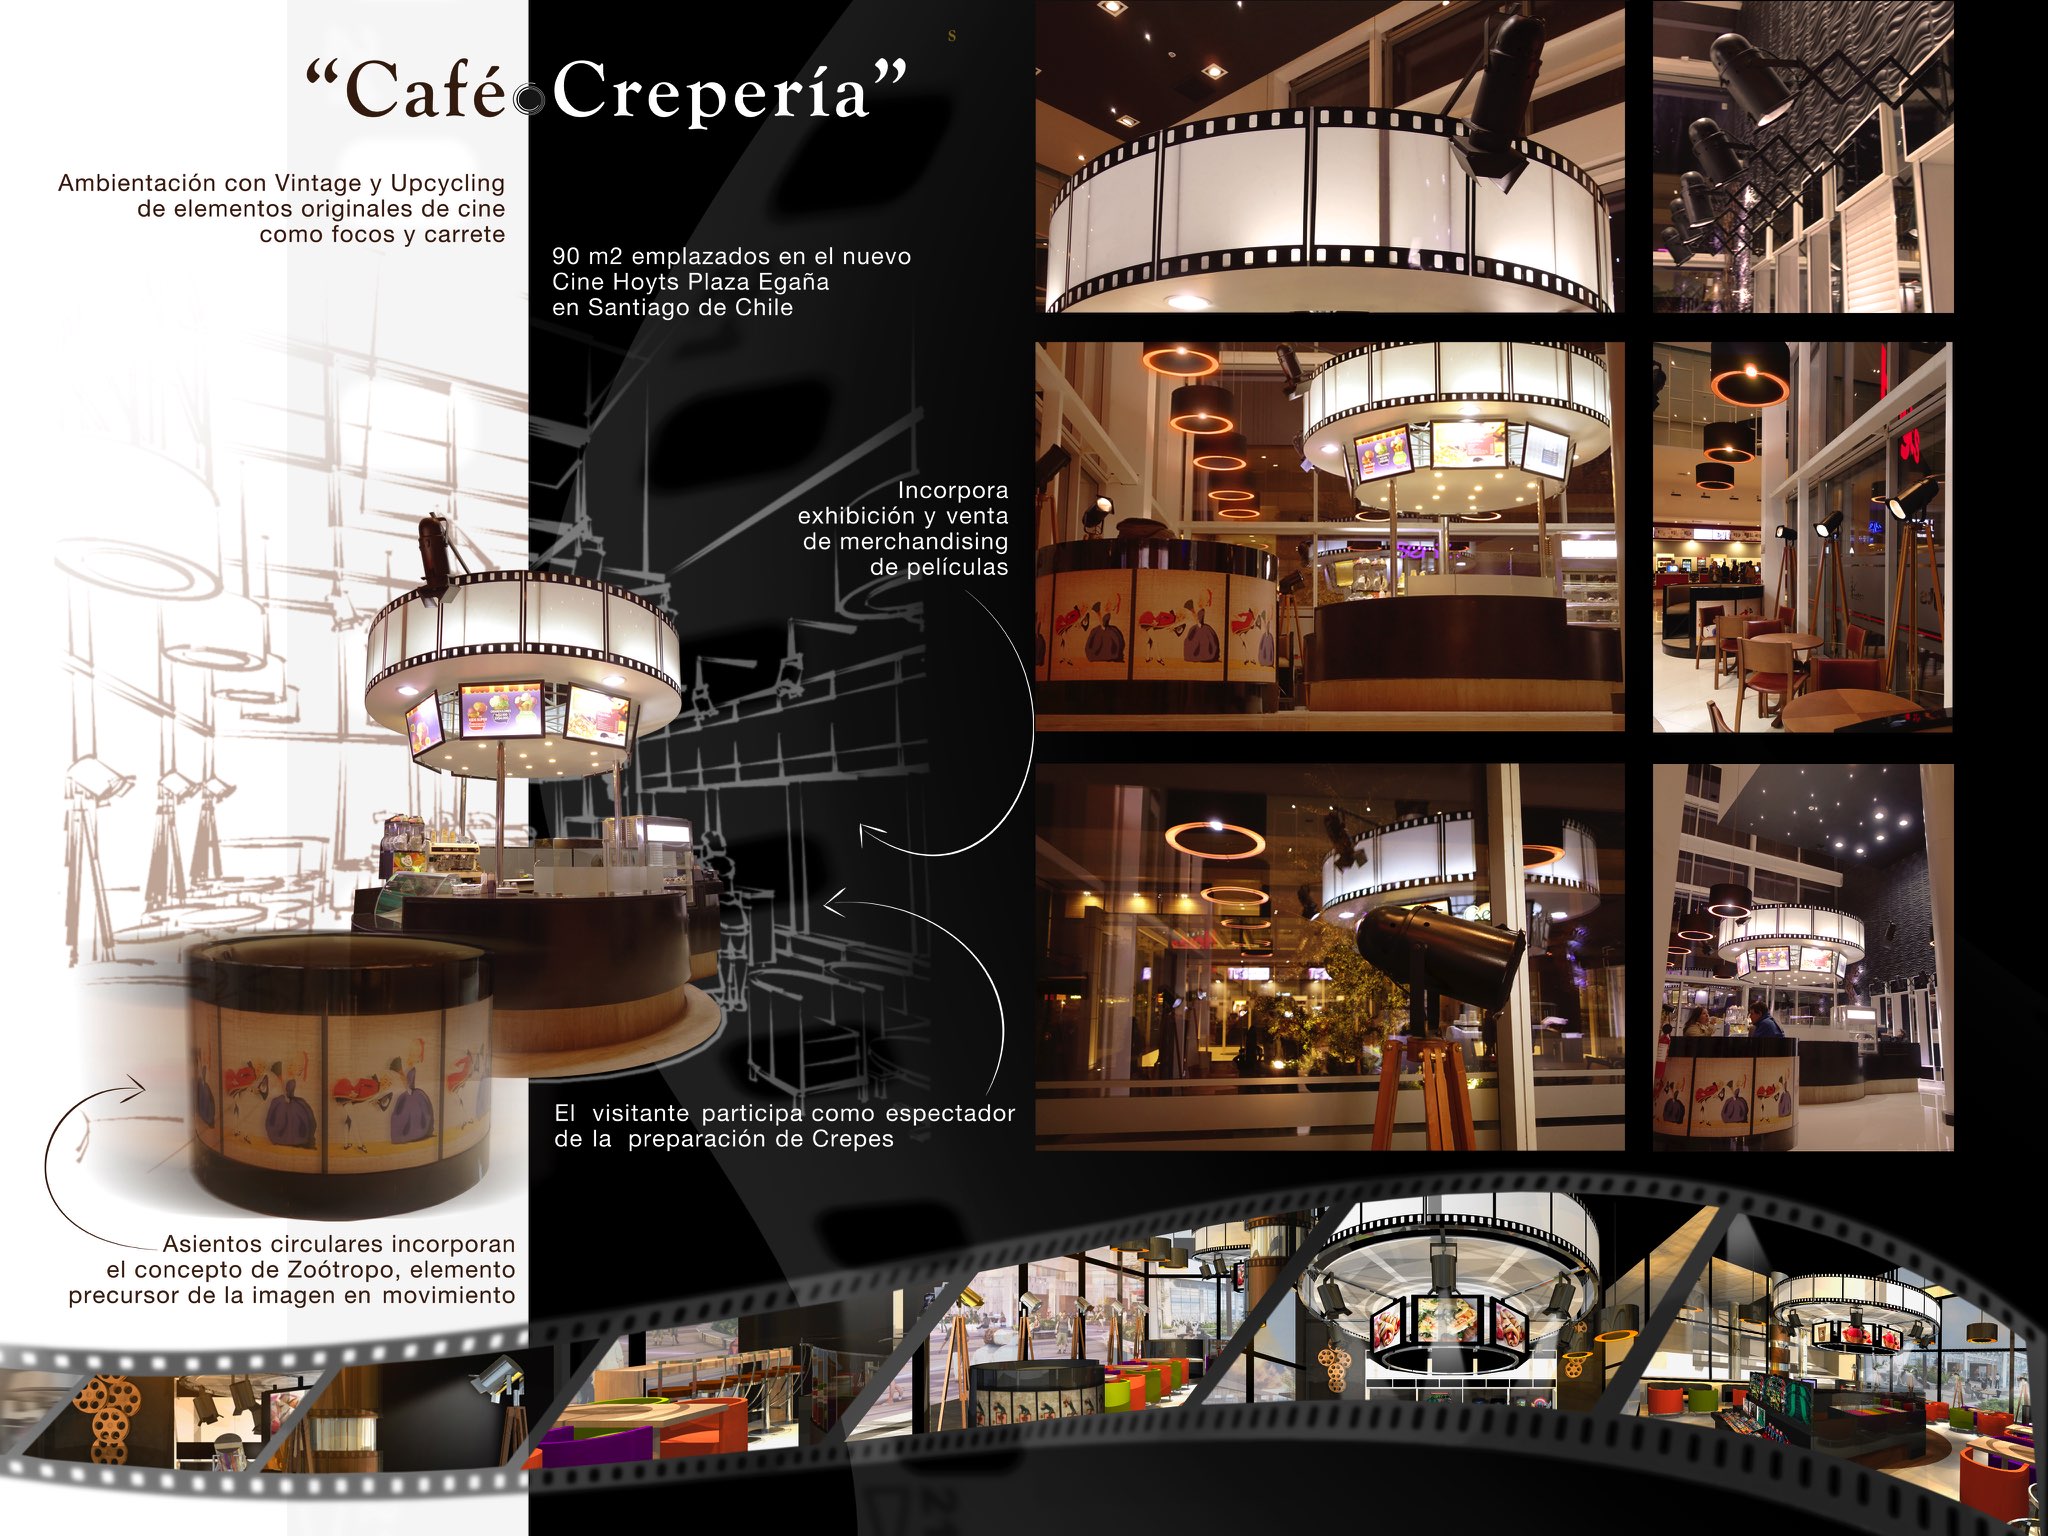 Café Crepería